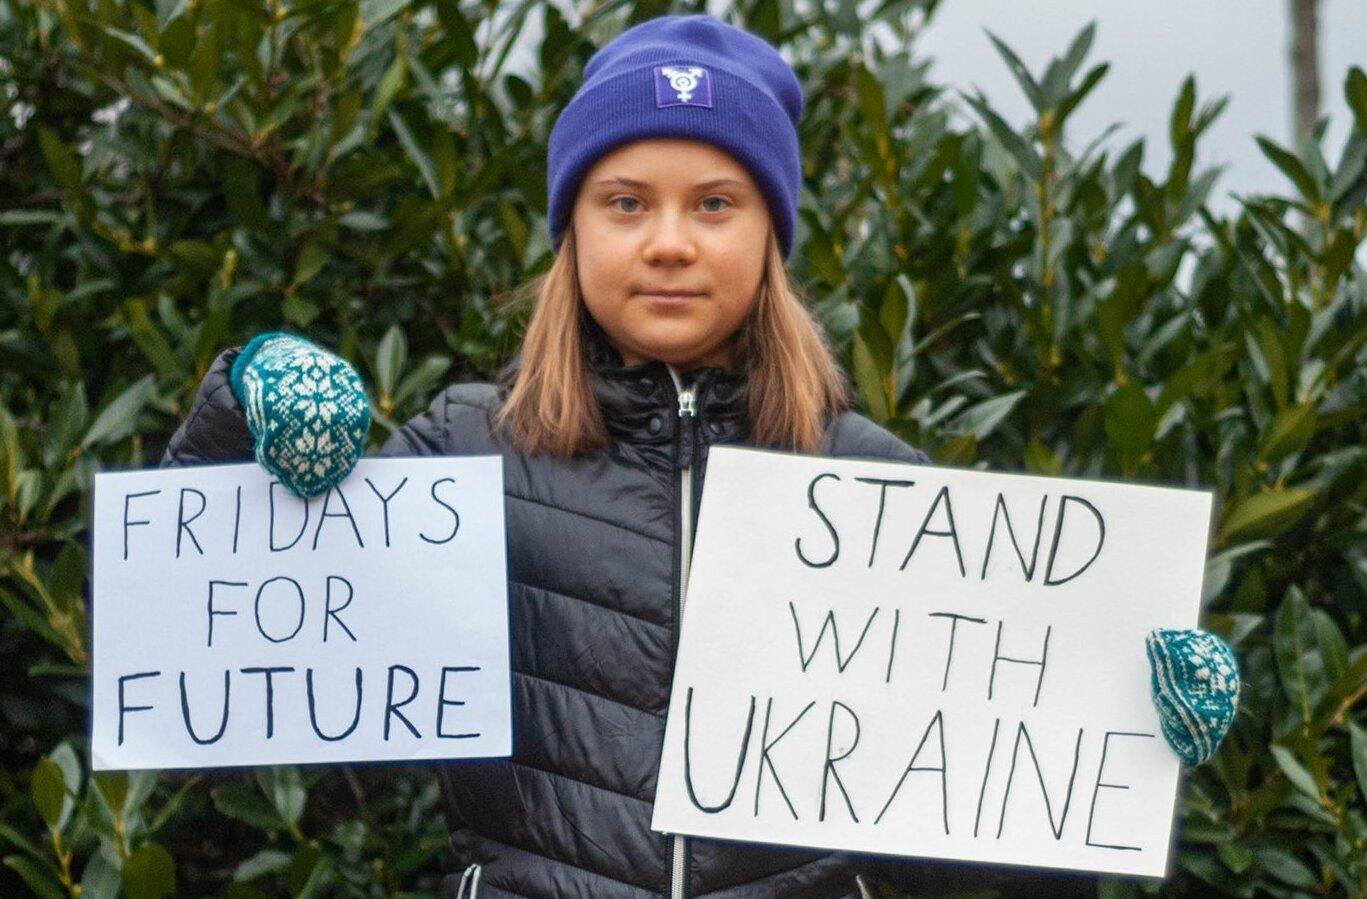 "Stand with Ukraine": Ґрета Тунберг підтримала Україну - 24 Канал